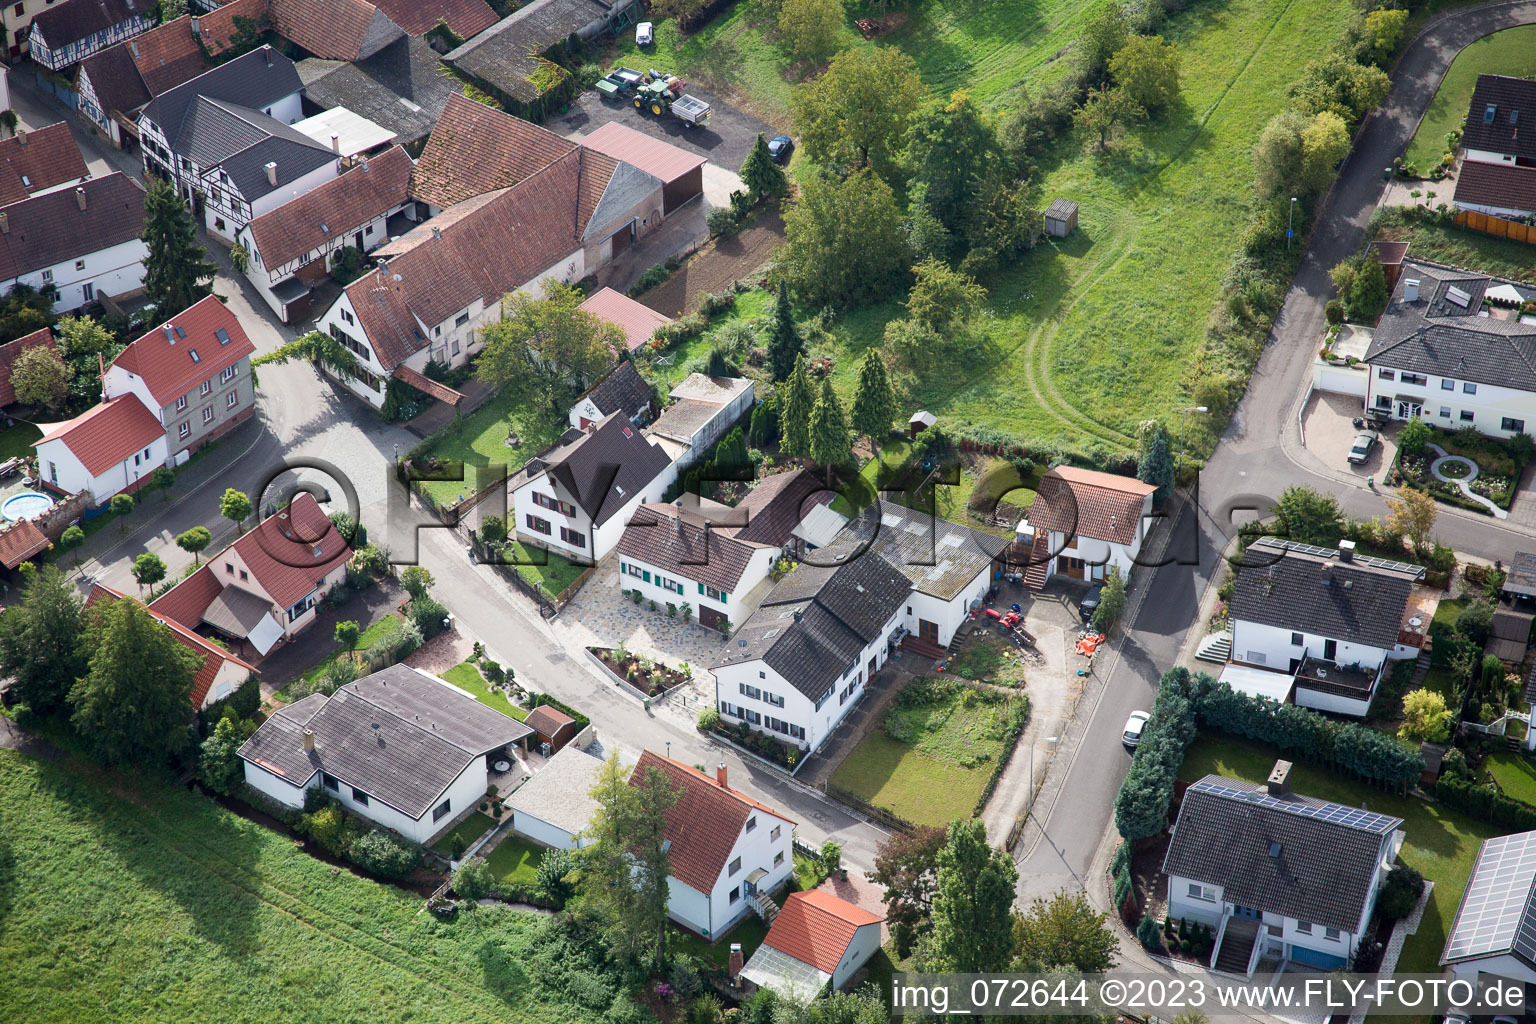 District Klingen in Heuchelheim-Klingen in the state Rhineland-Palatinate, Germany from the plane